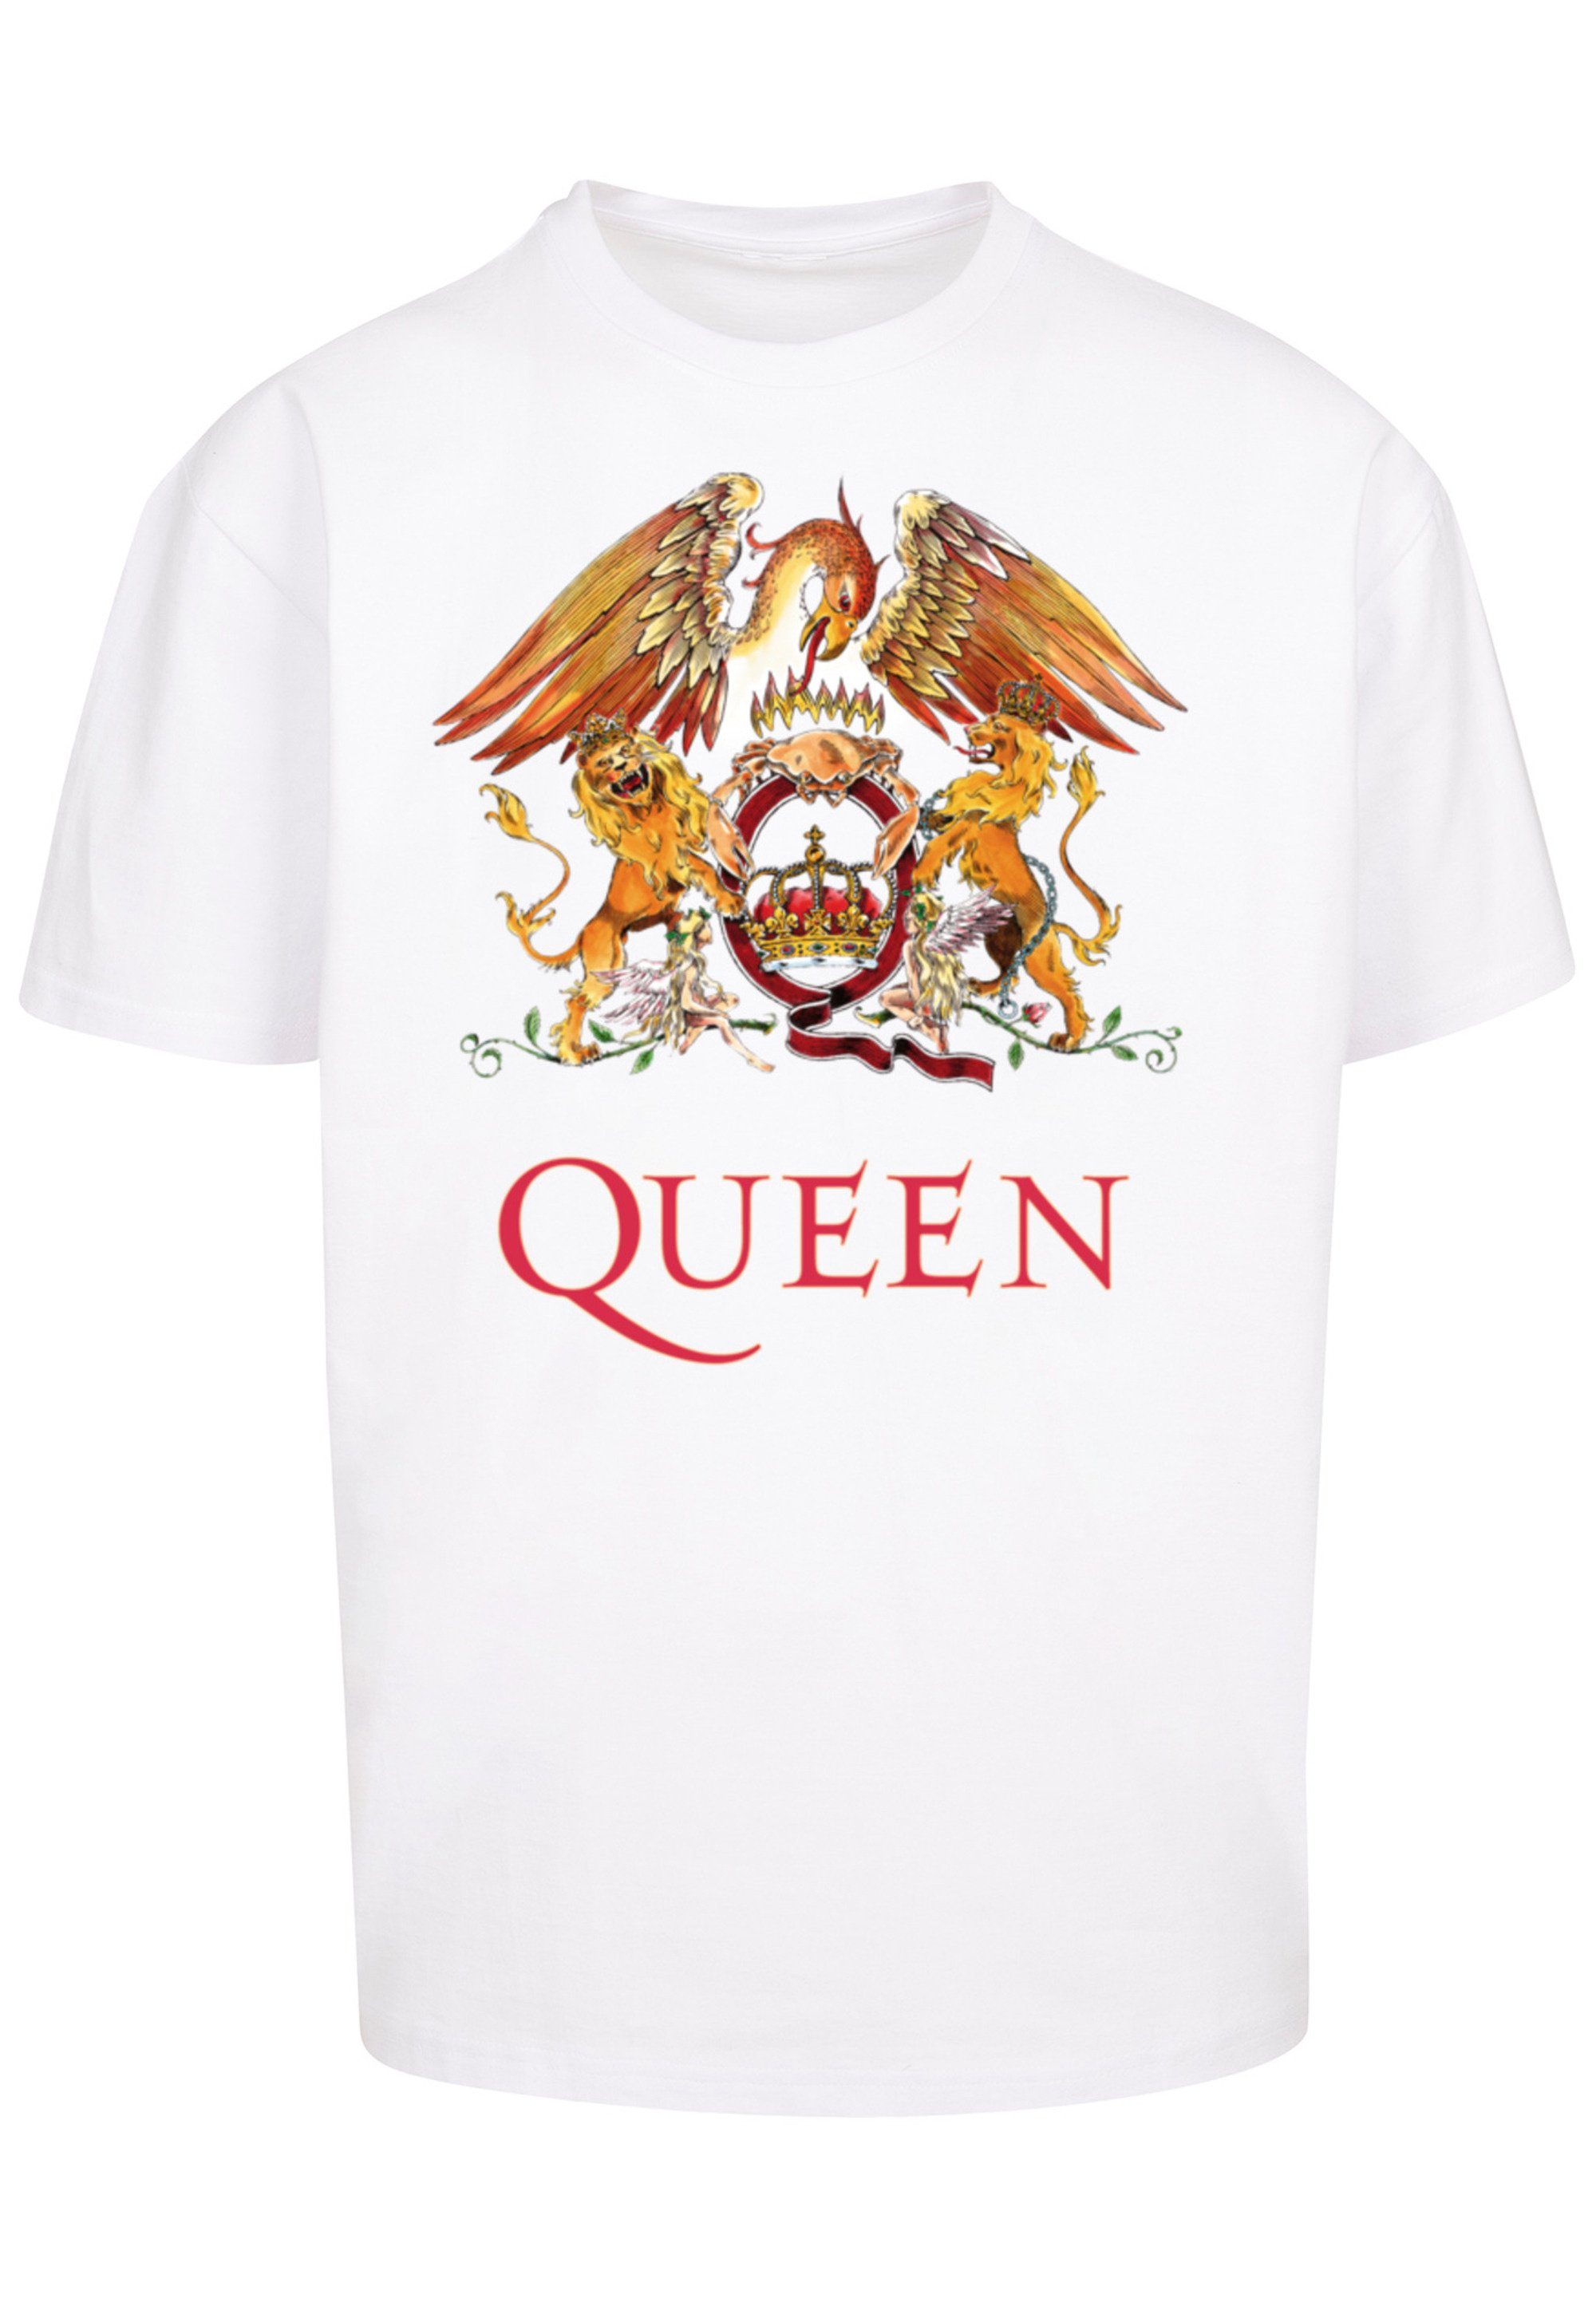 Crest weiß F4NT4STIC Black T-Shirt Queen Classic Rockband Print